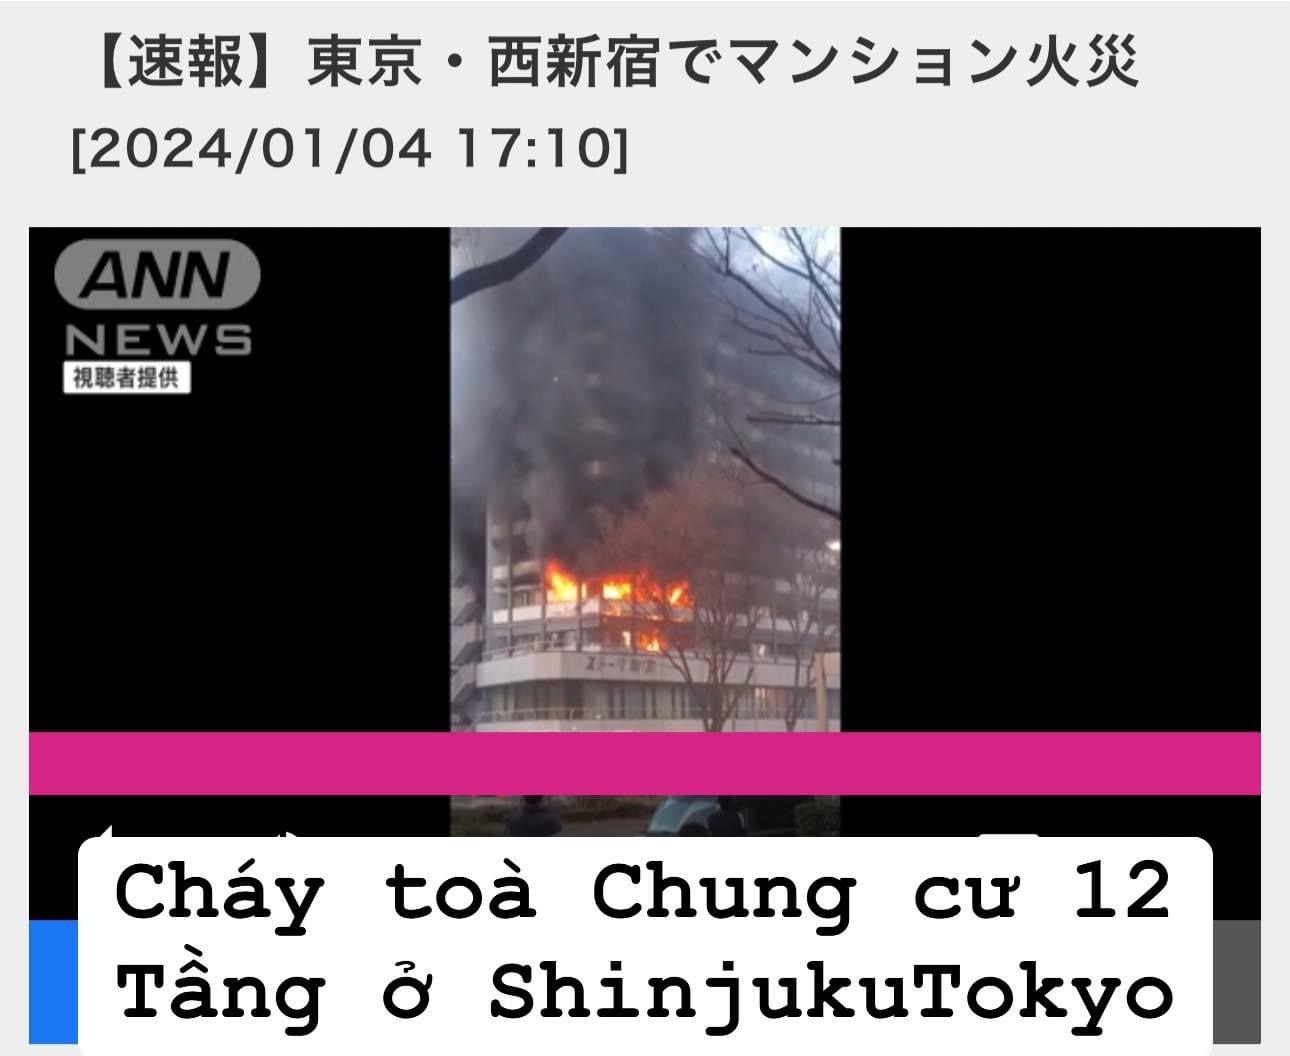 Cháy toà chung cư 12 ở shinjuku tokyo 